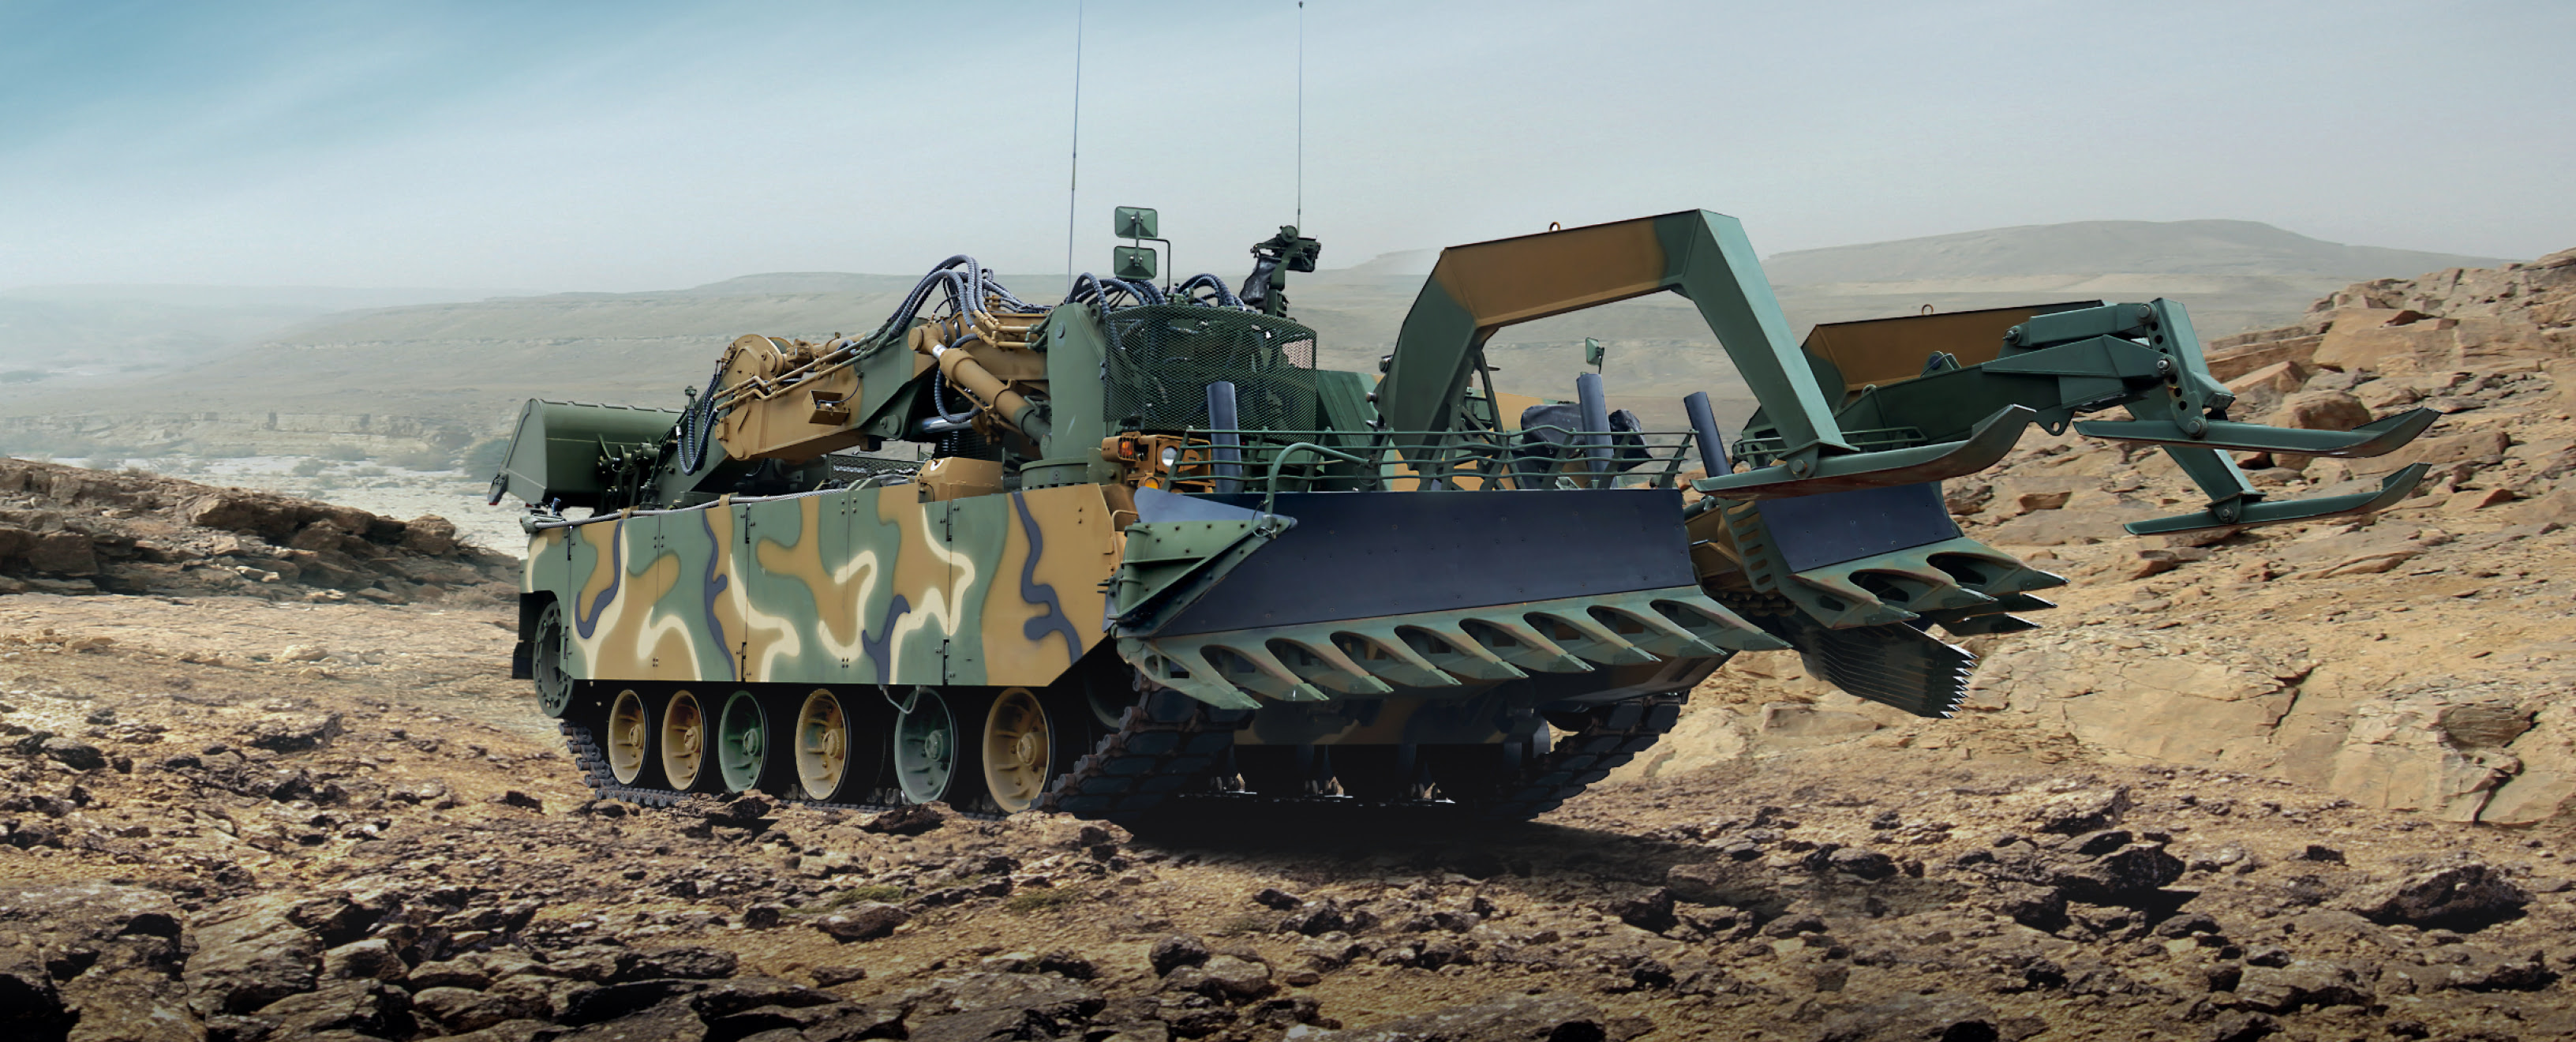 La Corée du Sud va transférer à l'AFU des véhicules blindés K600 Rhino pour le déminage, basés sur le char K1A1.